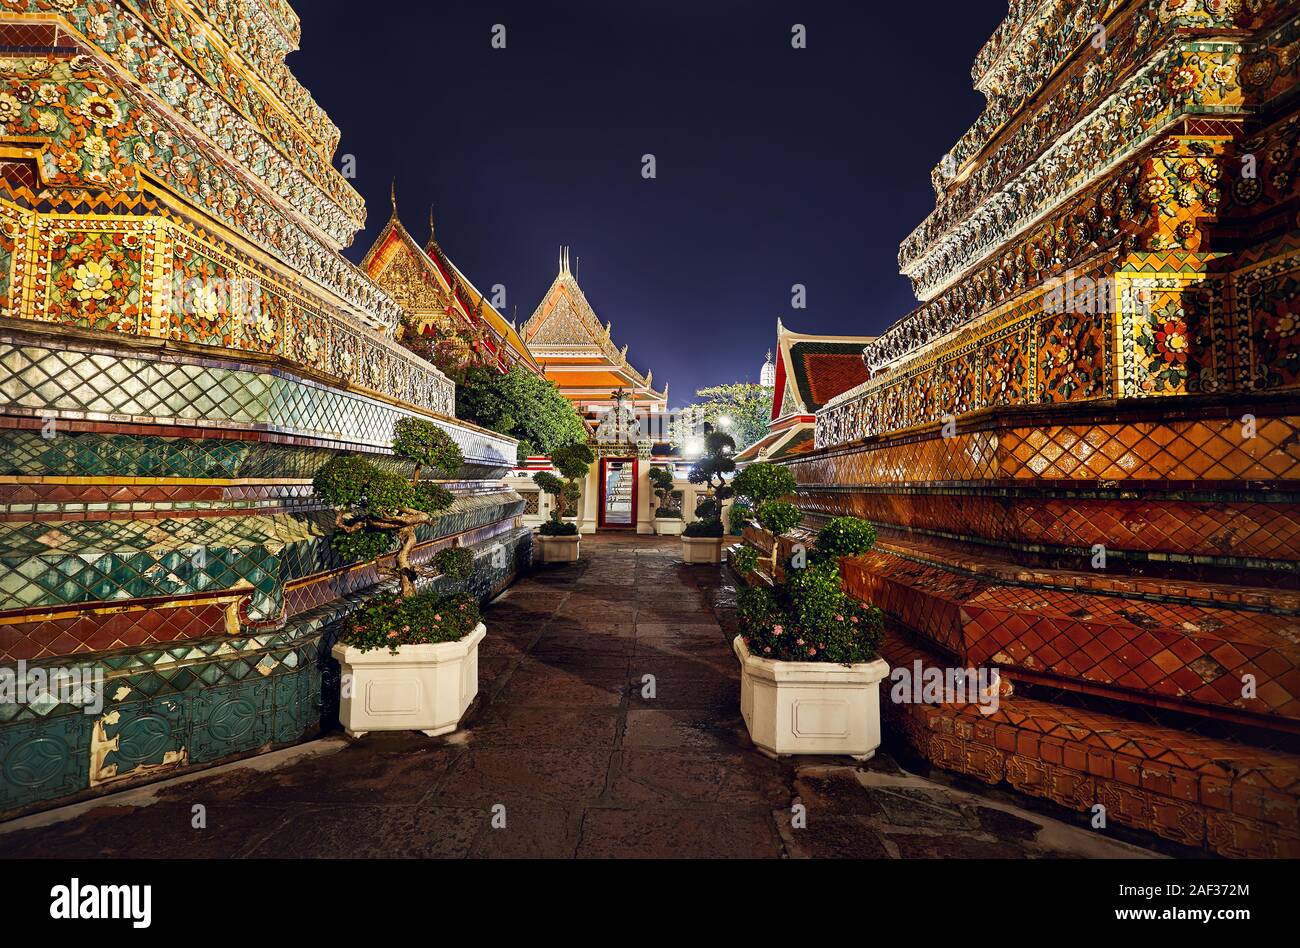 Buddhistischen Tempel Wat Pho mit goldenen Chedi in Bangkok bei Nacht Himmel in Thailand. Wahrzeichen und Sehenswürdigkeiten der Stadt. Stockfoto